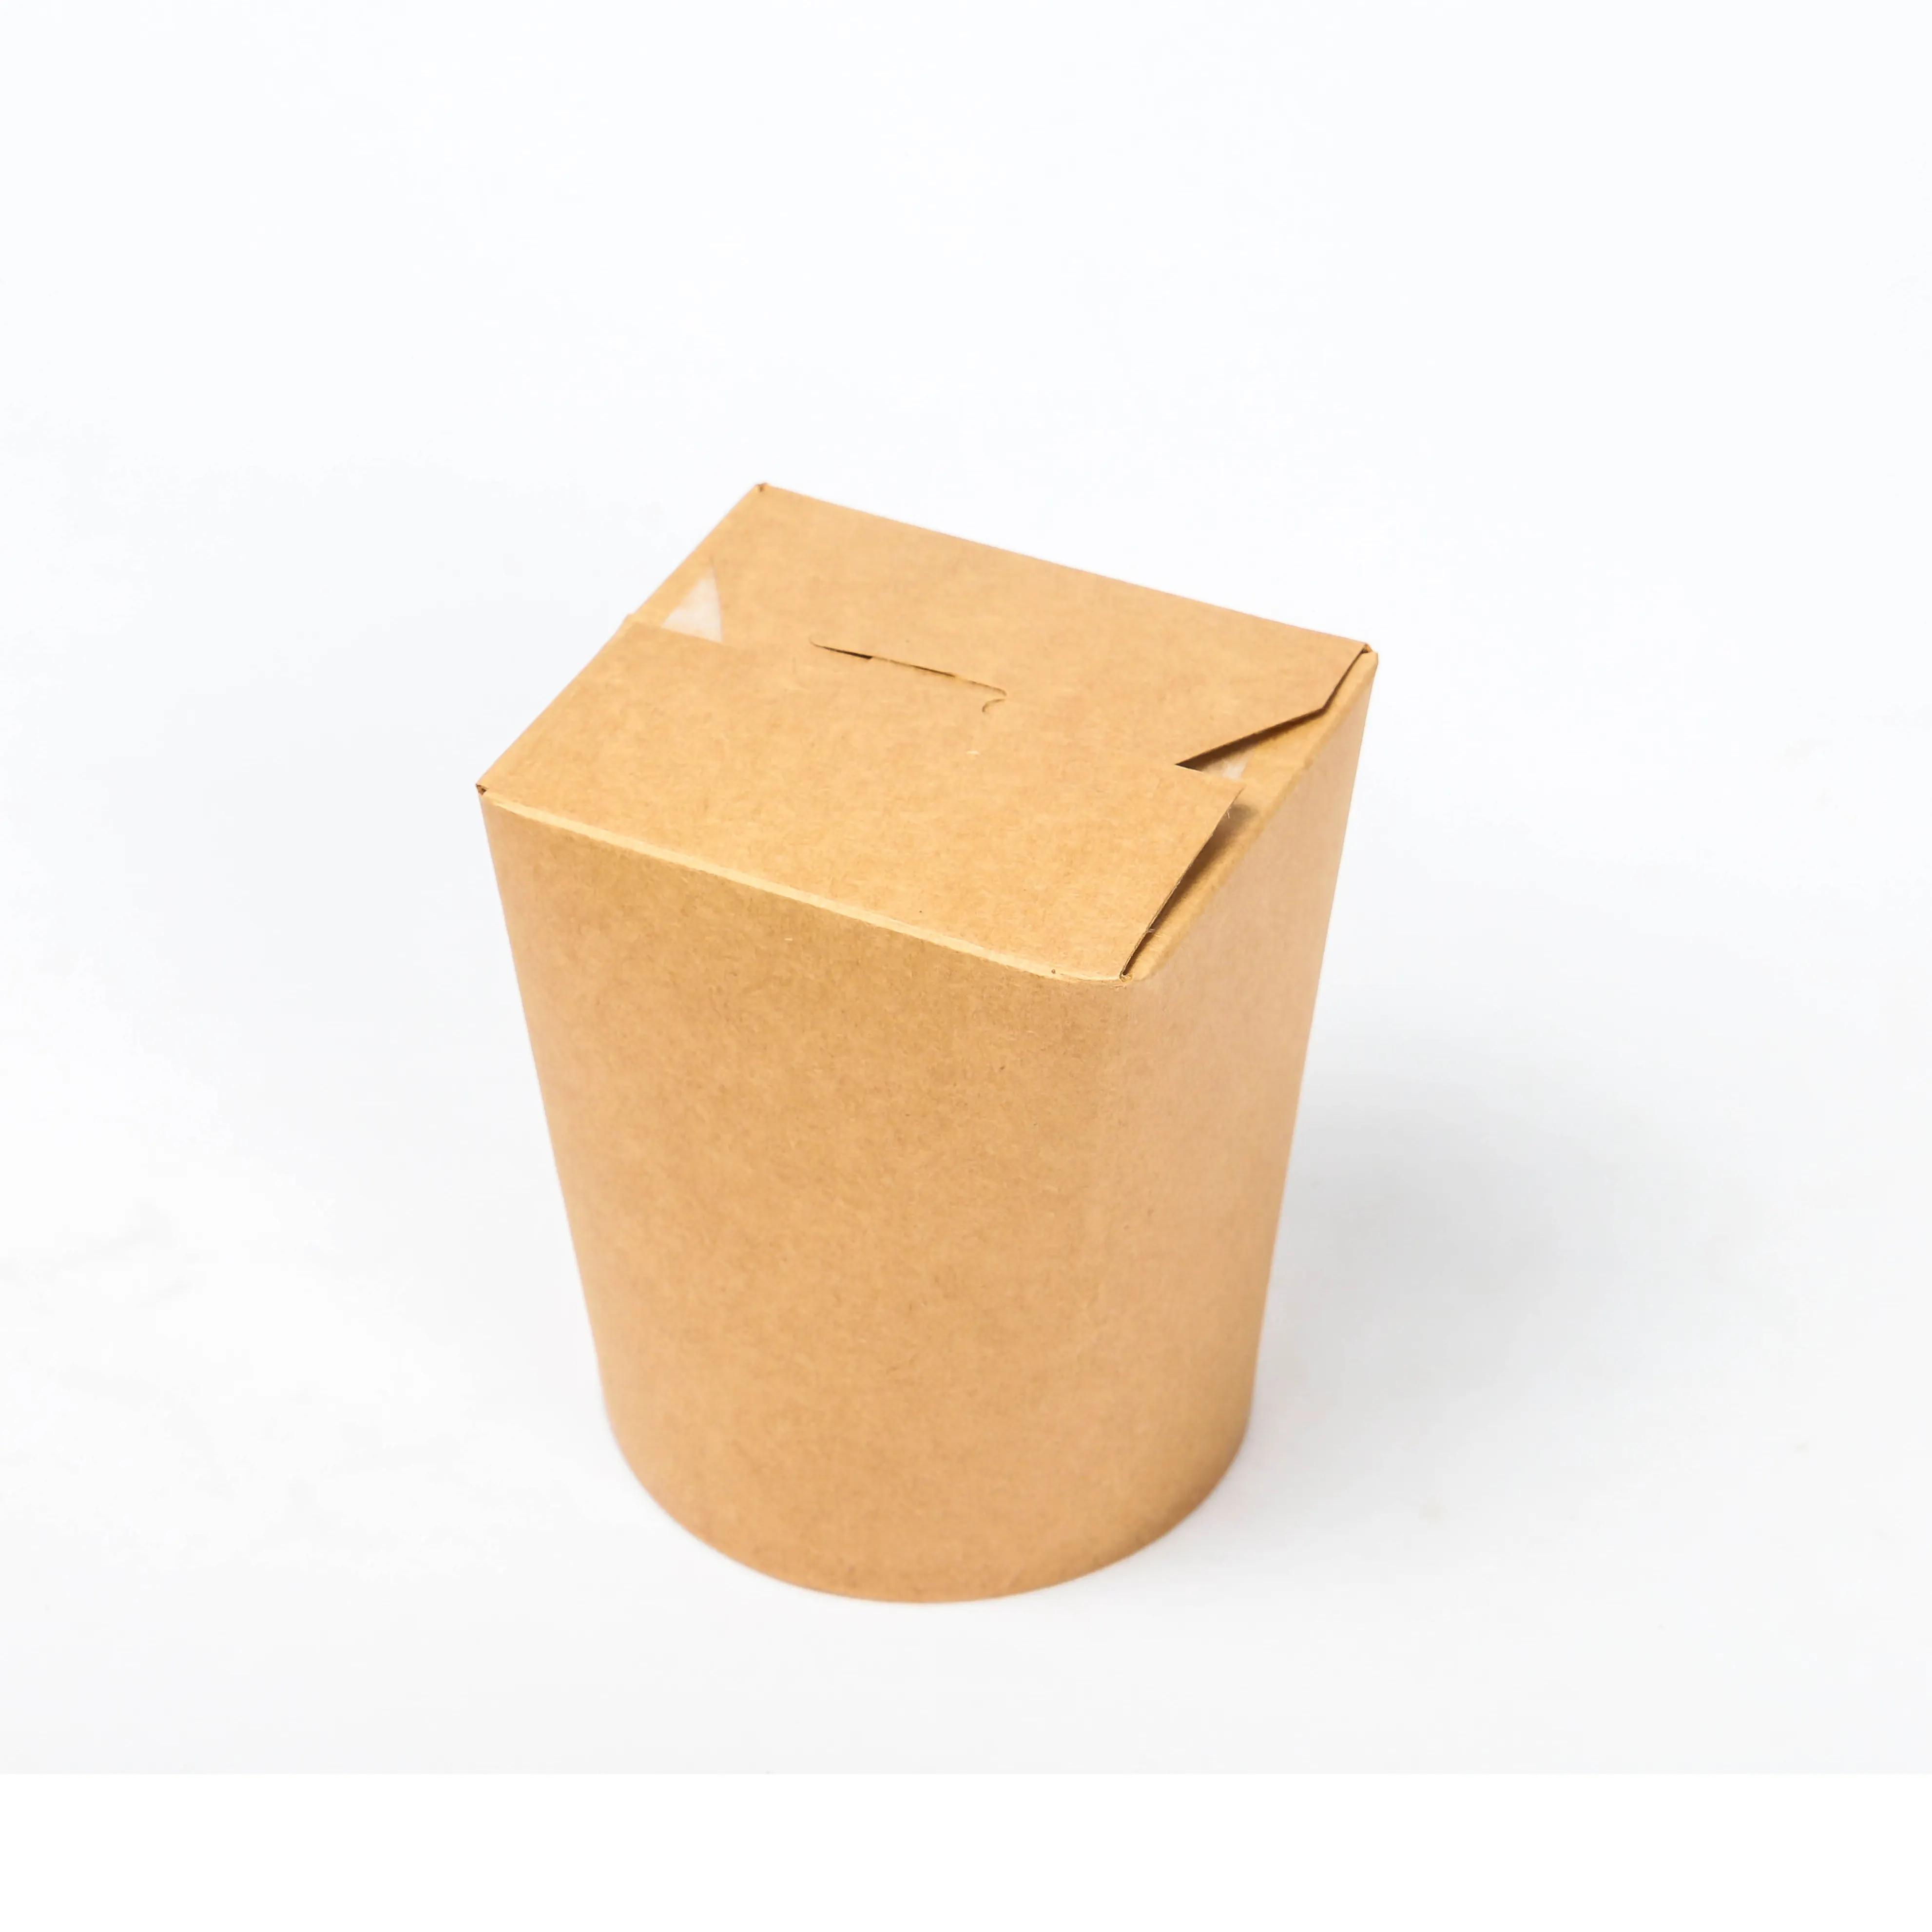 Barato al por mayor para llevar embalaje de calidad alimentaria Kraft precio razonable fabricantes de cajas de papel OEM